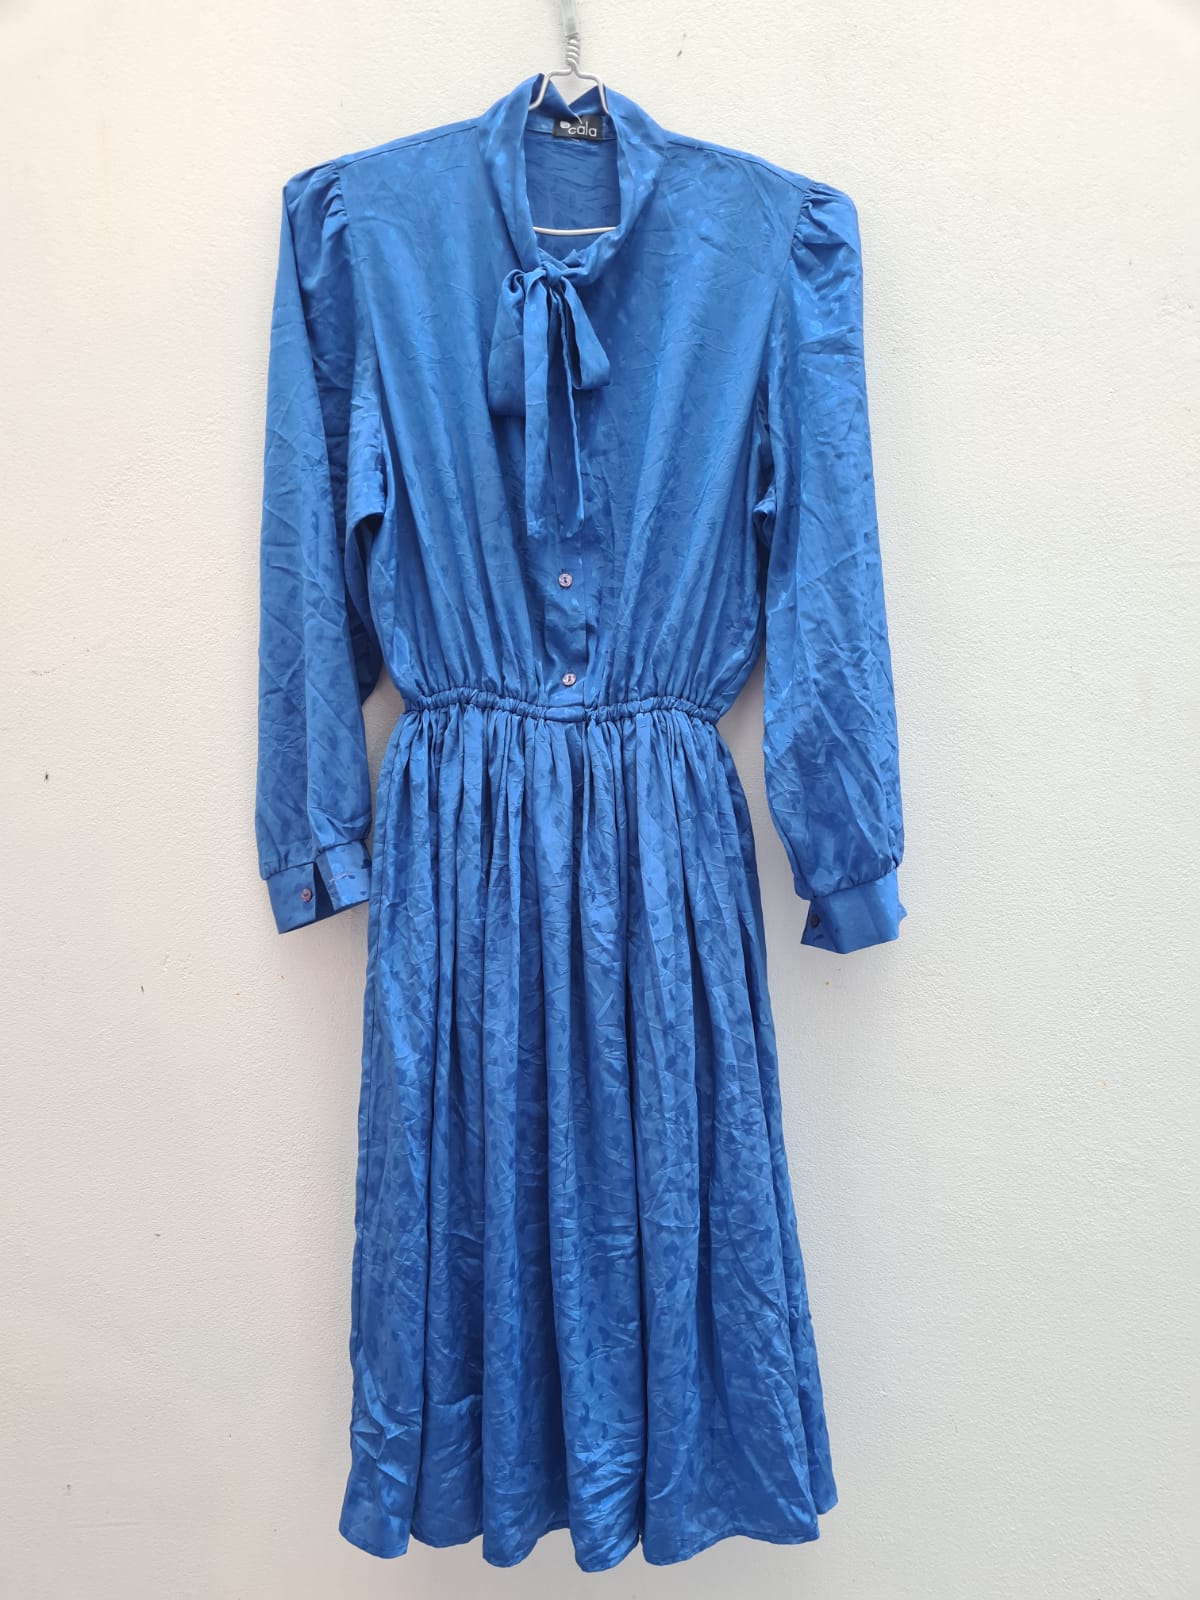 שמלת וינטג׳ כחול שרוולים ארוכים